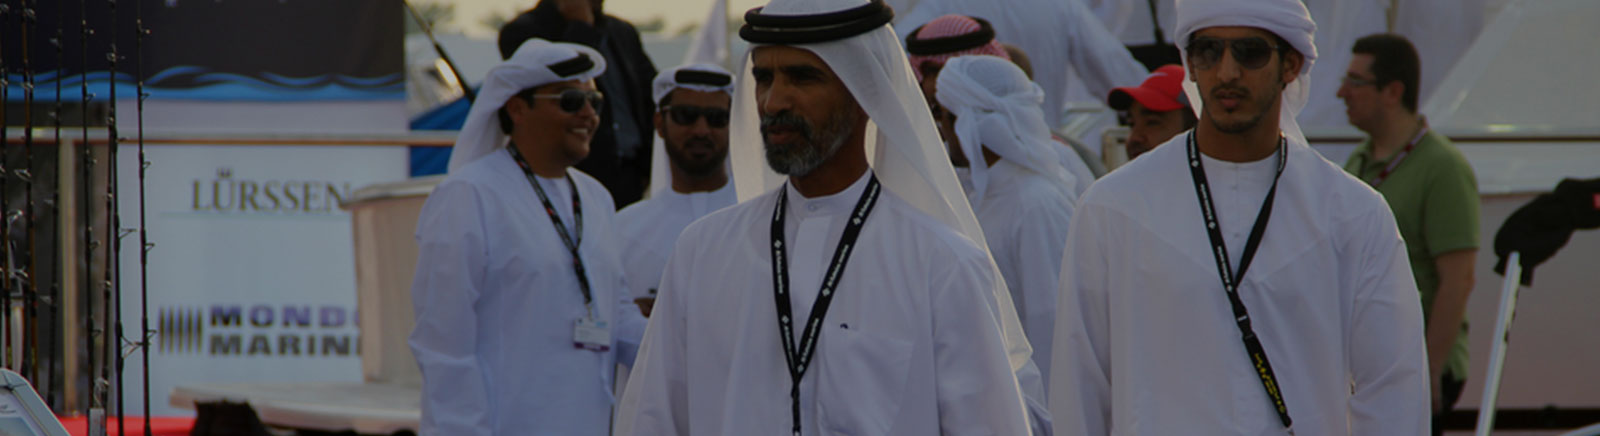 Corporate Events in Dubai